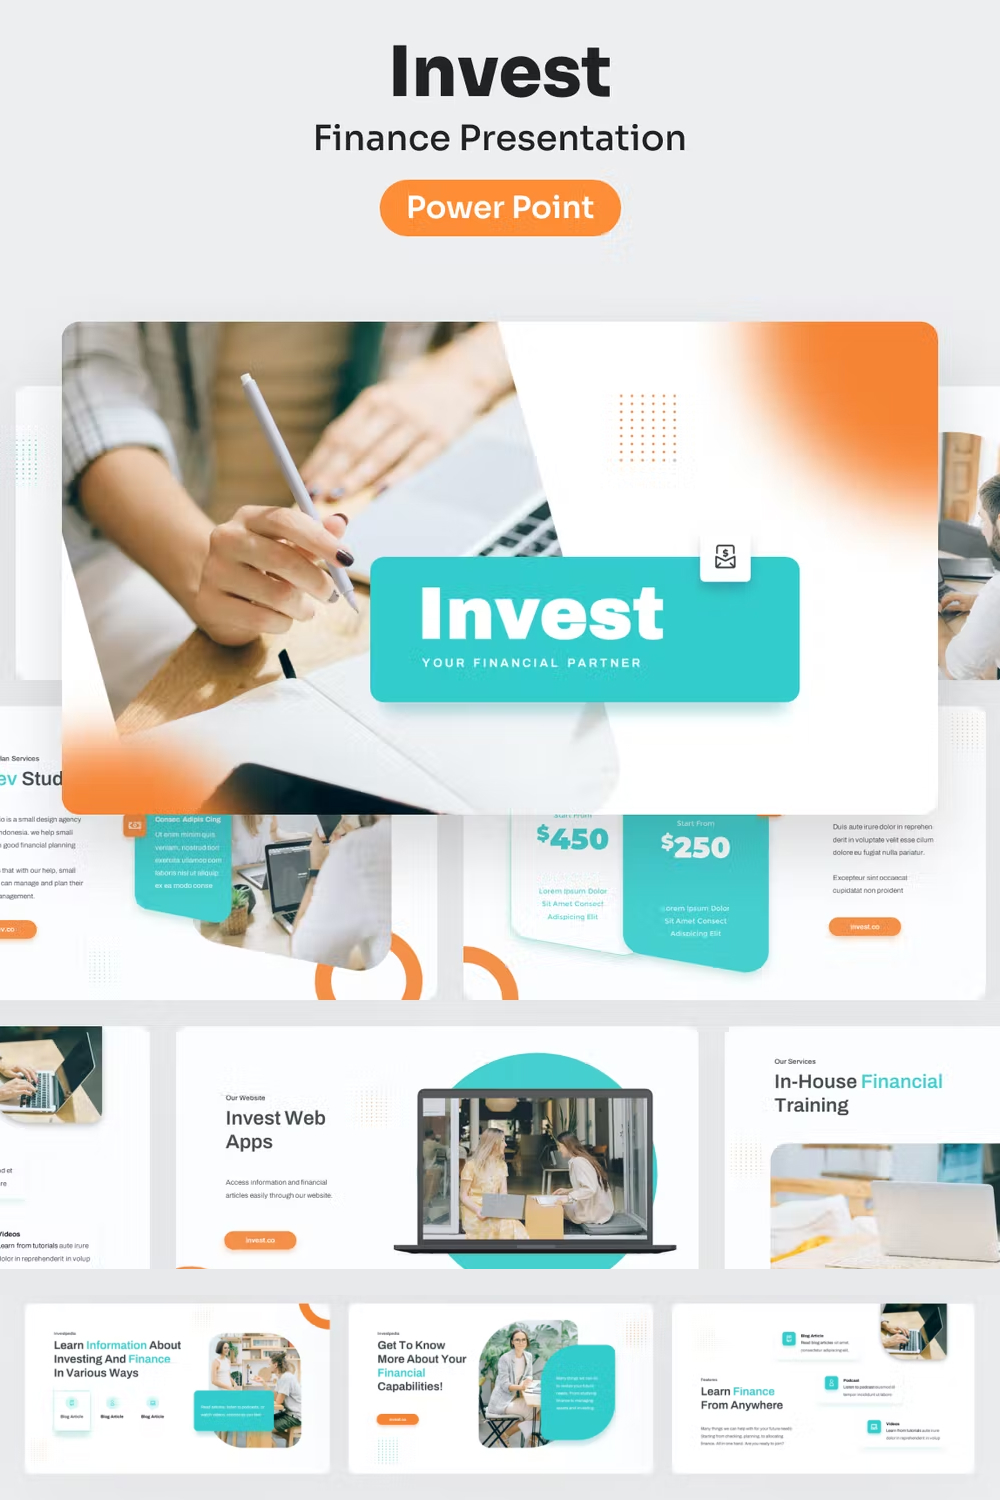 Invest finance powerpoint presentation of pinterest.